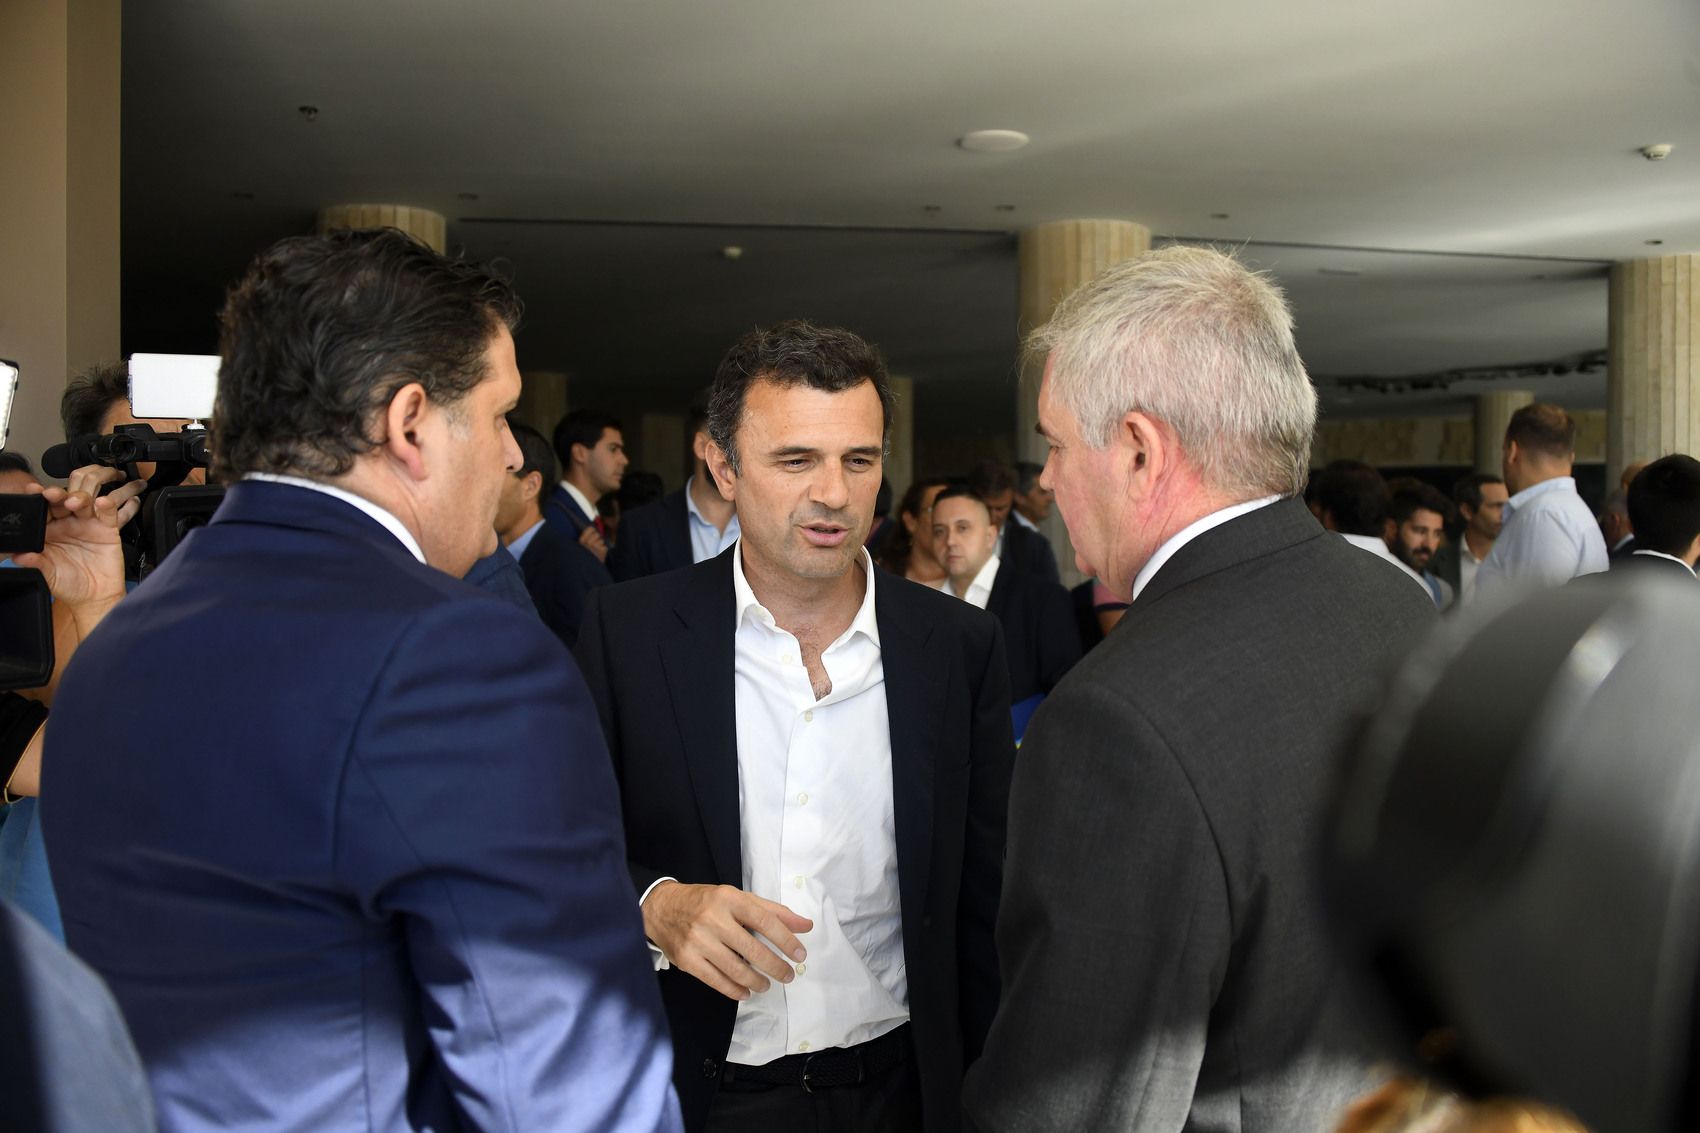 Rafael Contreras y Manuel Vizcaíno, del Cádiz Club de Fútbol, conversan con el alcalde Bruno García tras la presentación de Sportech.